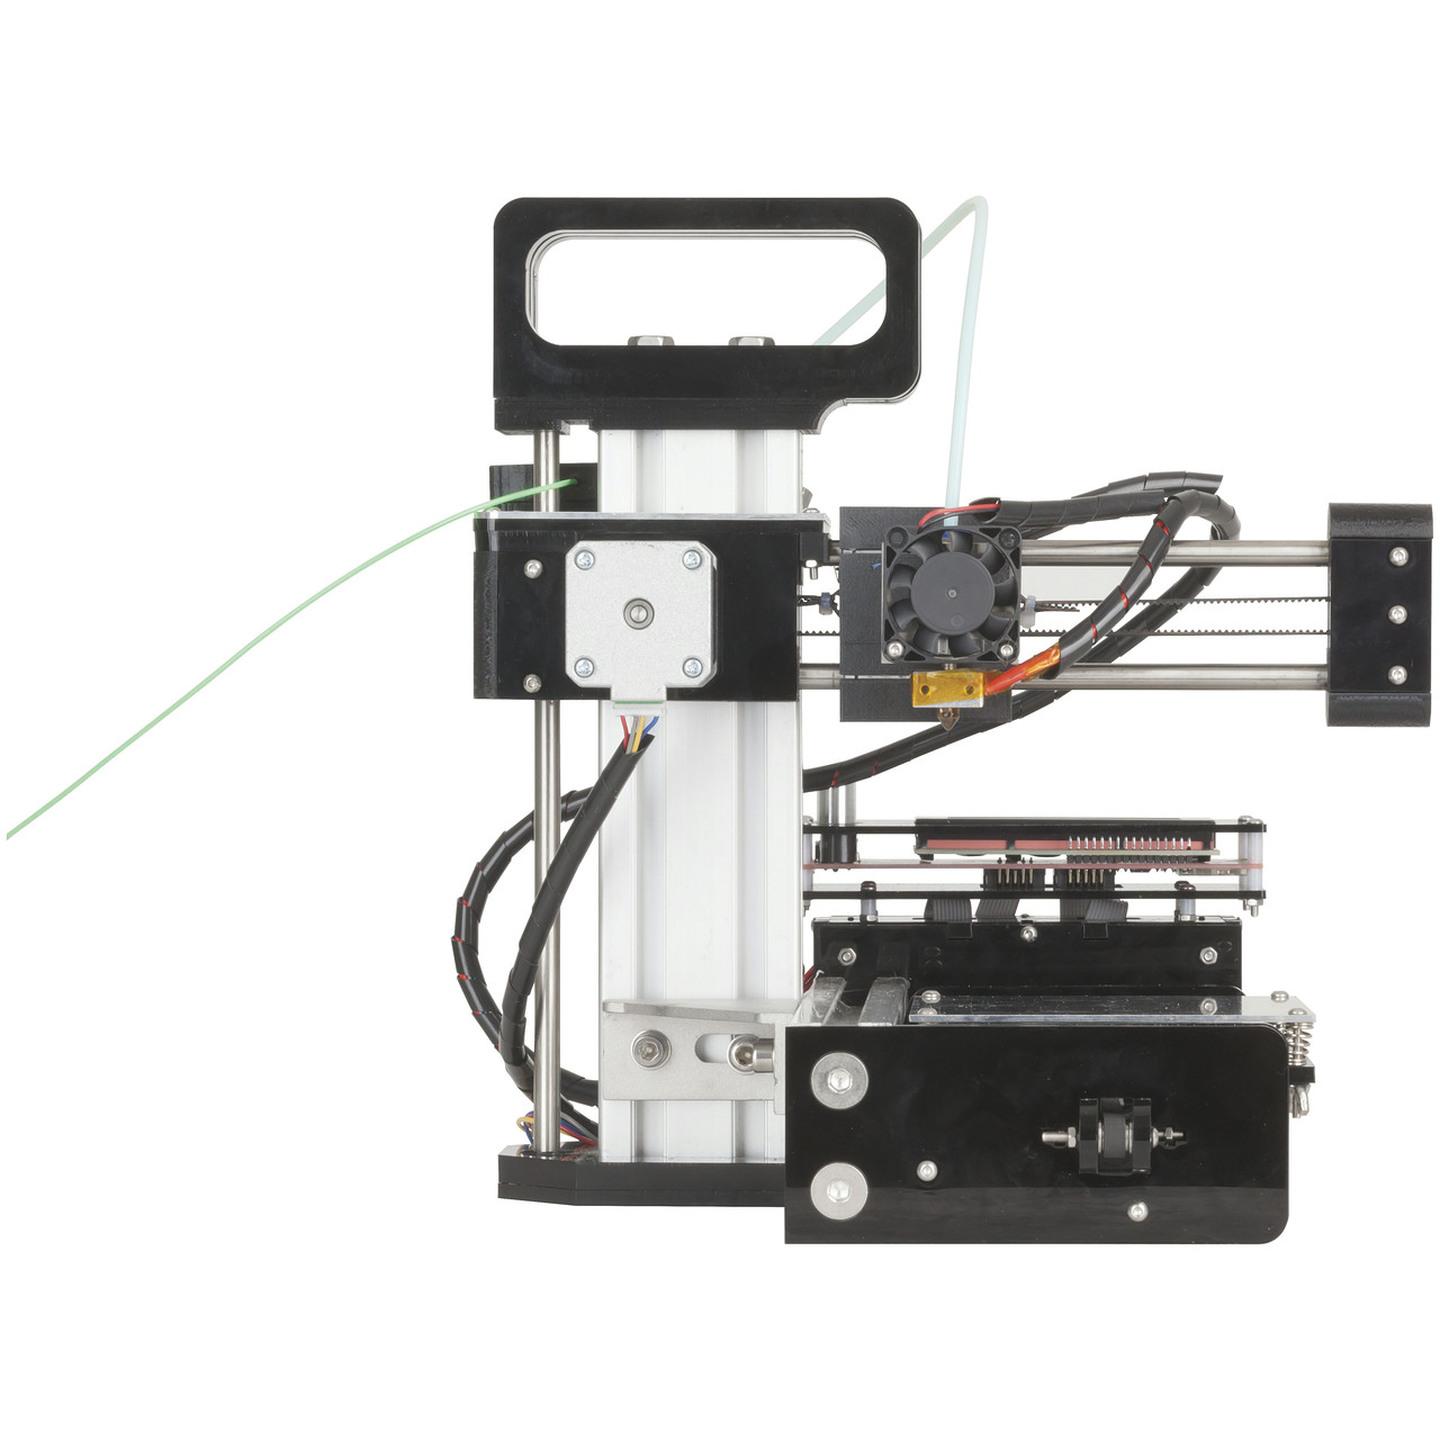 Duinotech Mini 3D Printer